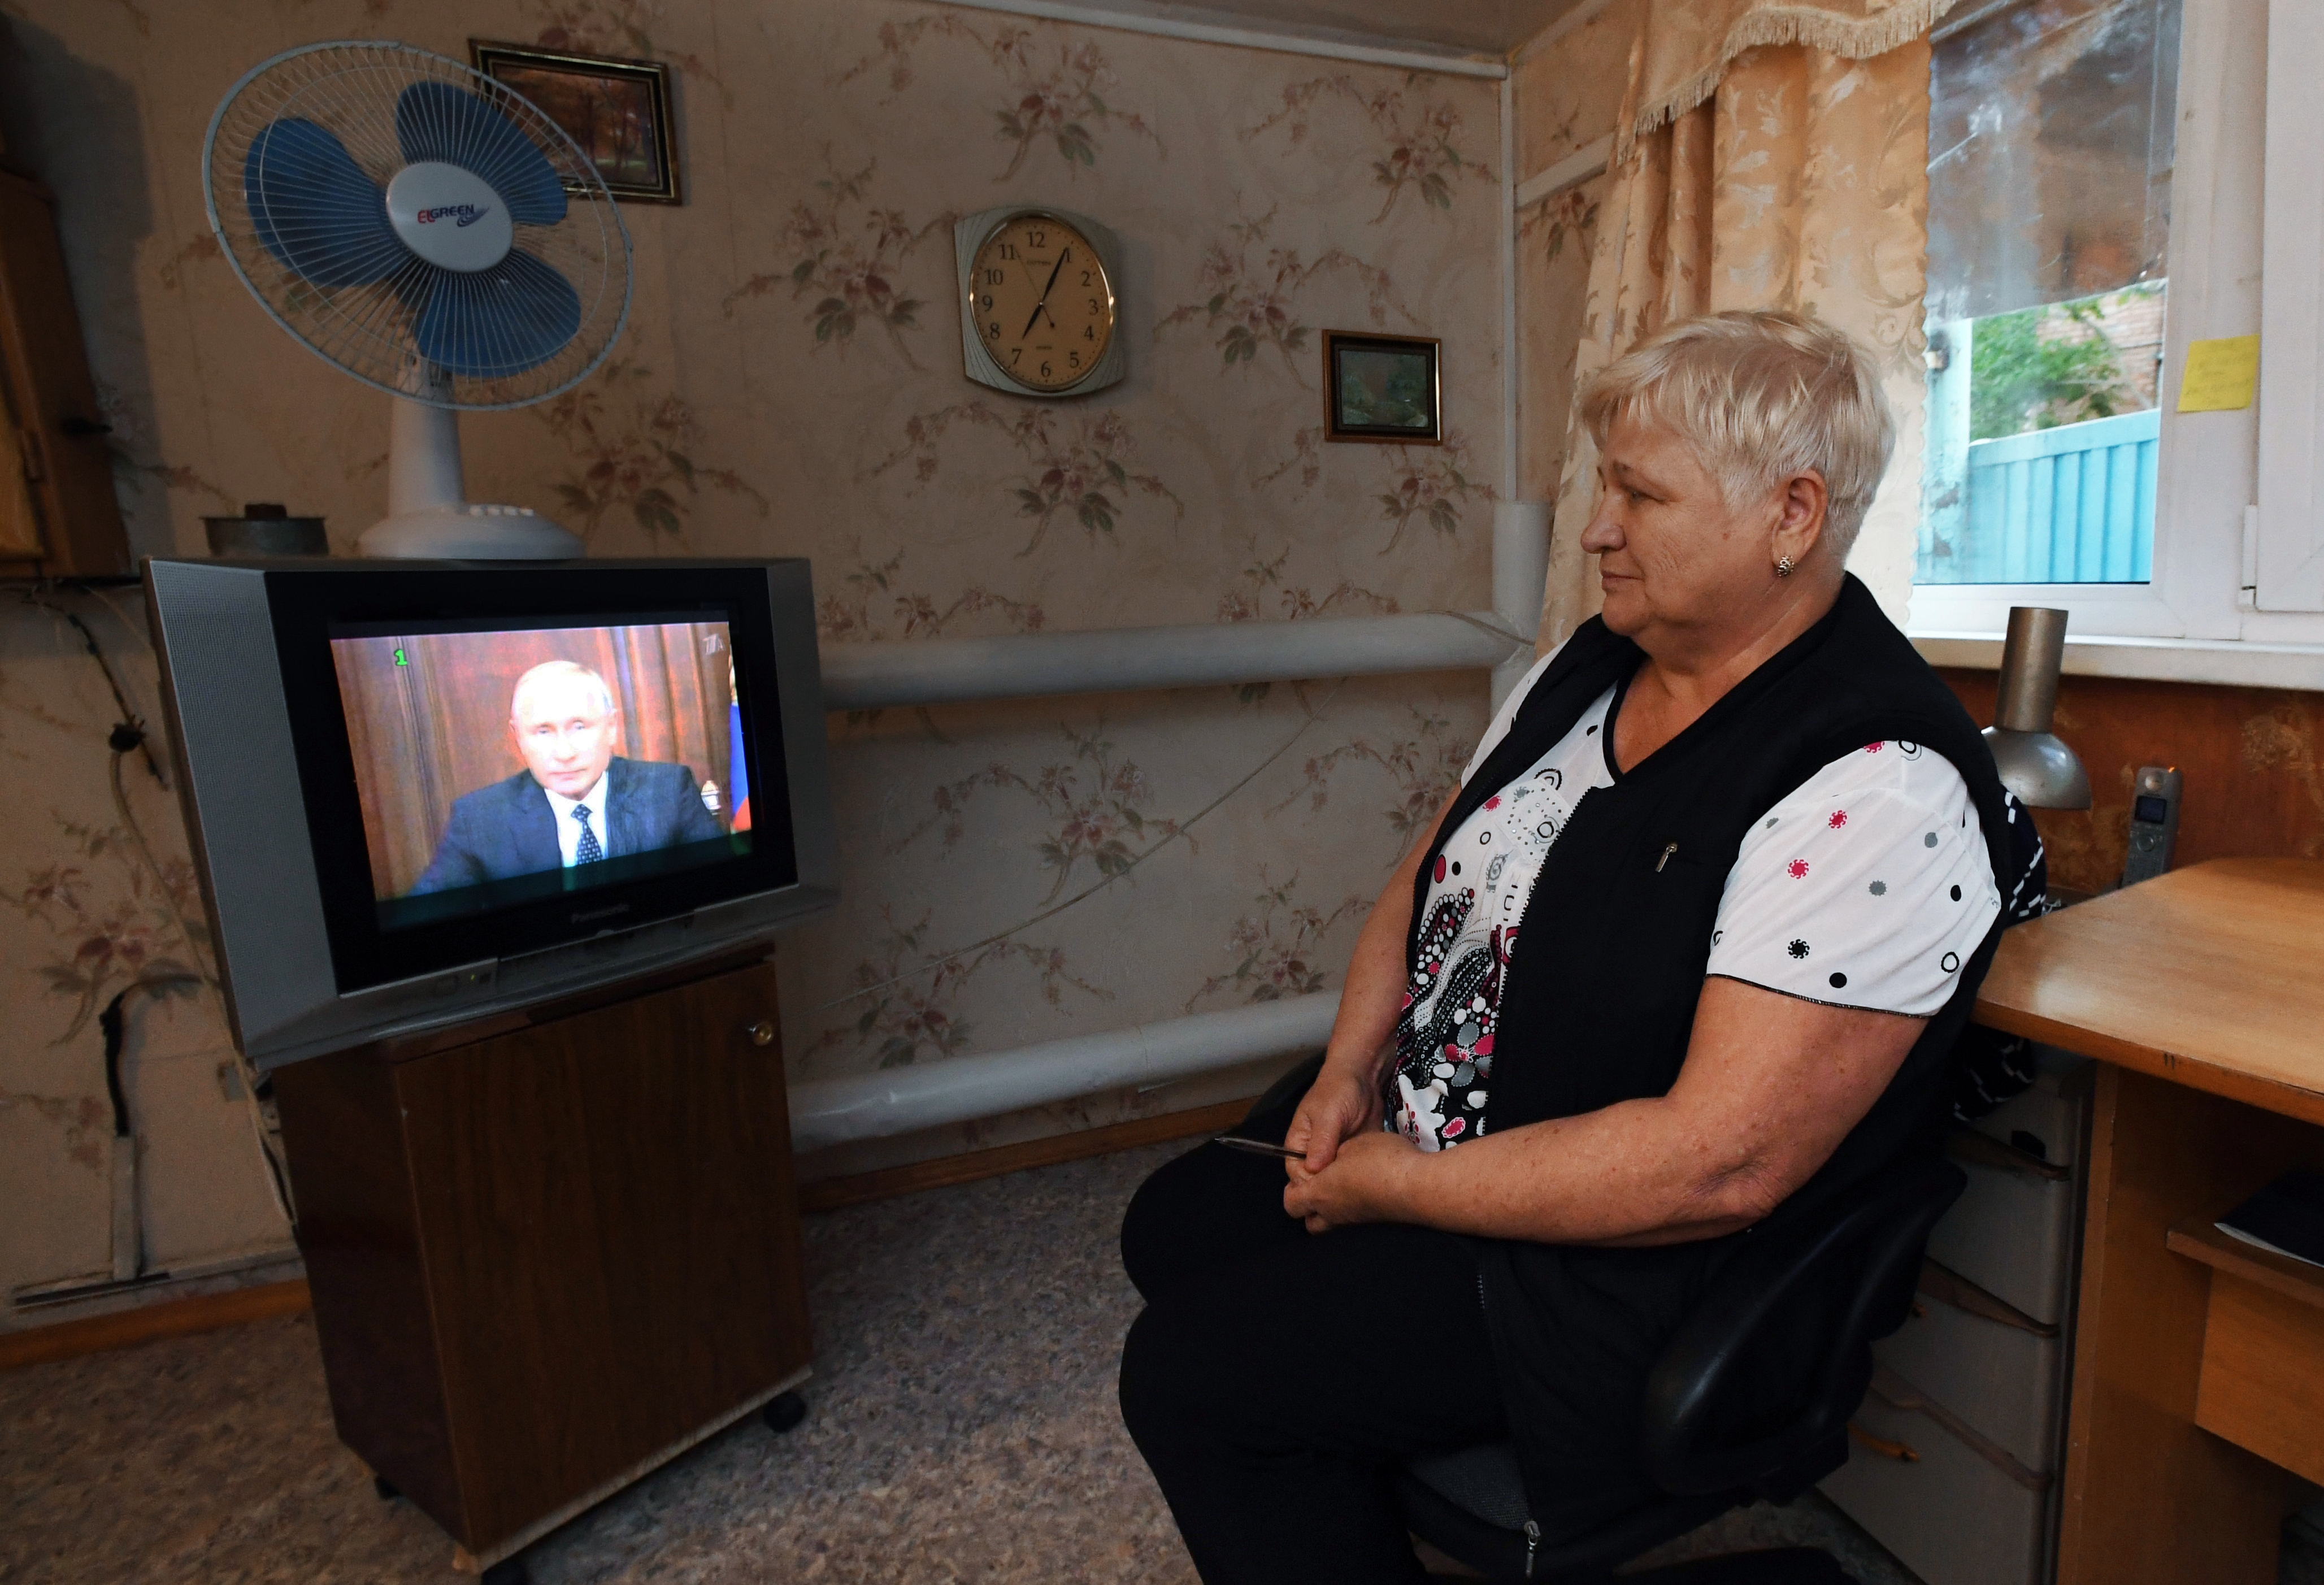 Какие новости про пенсию. Кабельное Телевидение для пенсионеров. Пенсионеры смотрят телевизор. Пенсионер у телевизора.